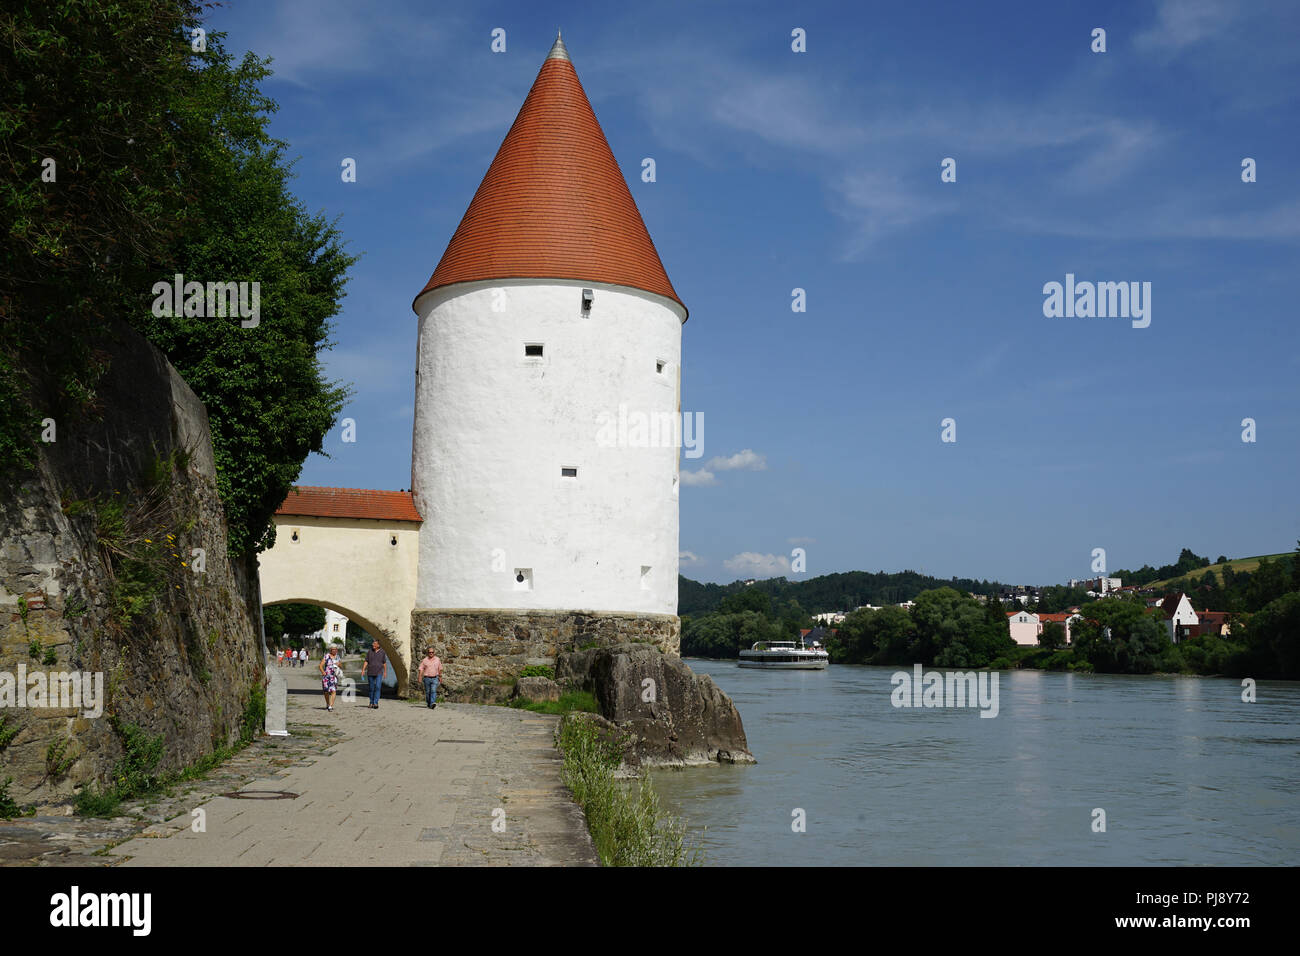 Schaiblingsturm, Rundturm, mittelalterliche Stadtbefestigung, Stadtmauer zum Inn, Altstadt, Passau, Bayern, Deutschland Foto Stock